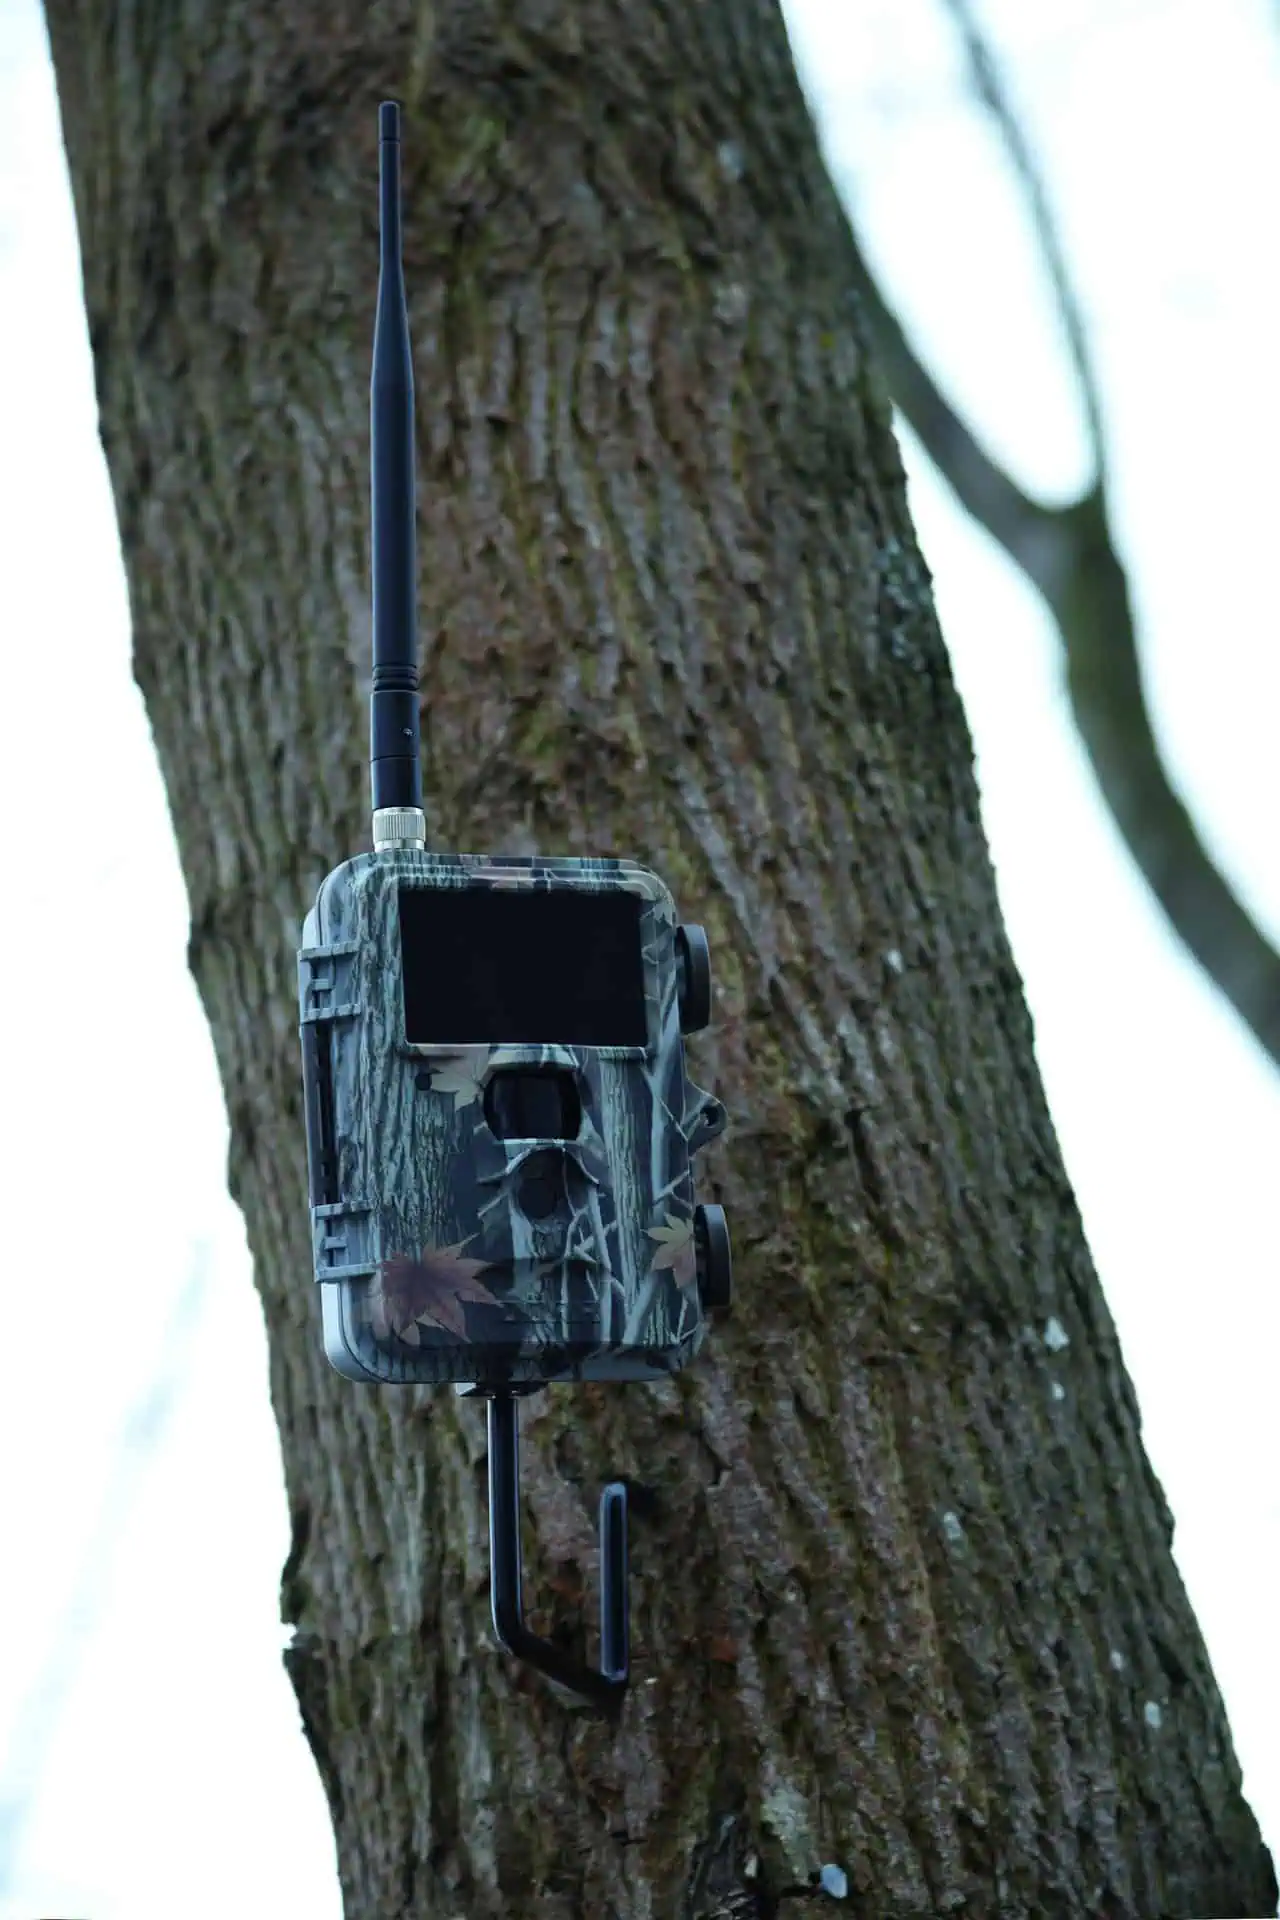 Tree screw 1/4" for surveillance cameras